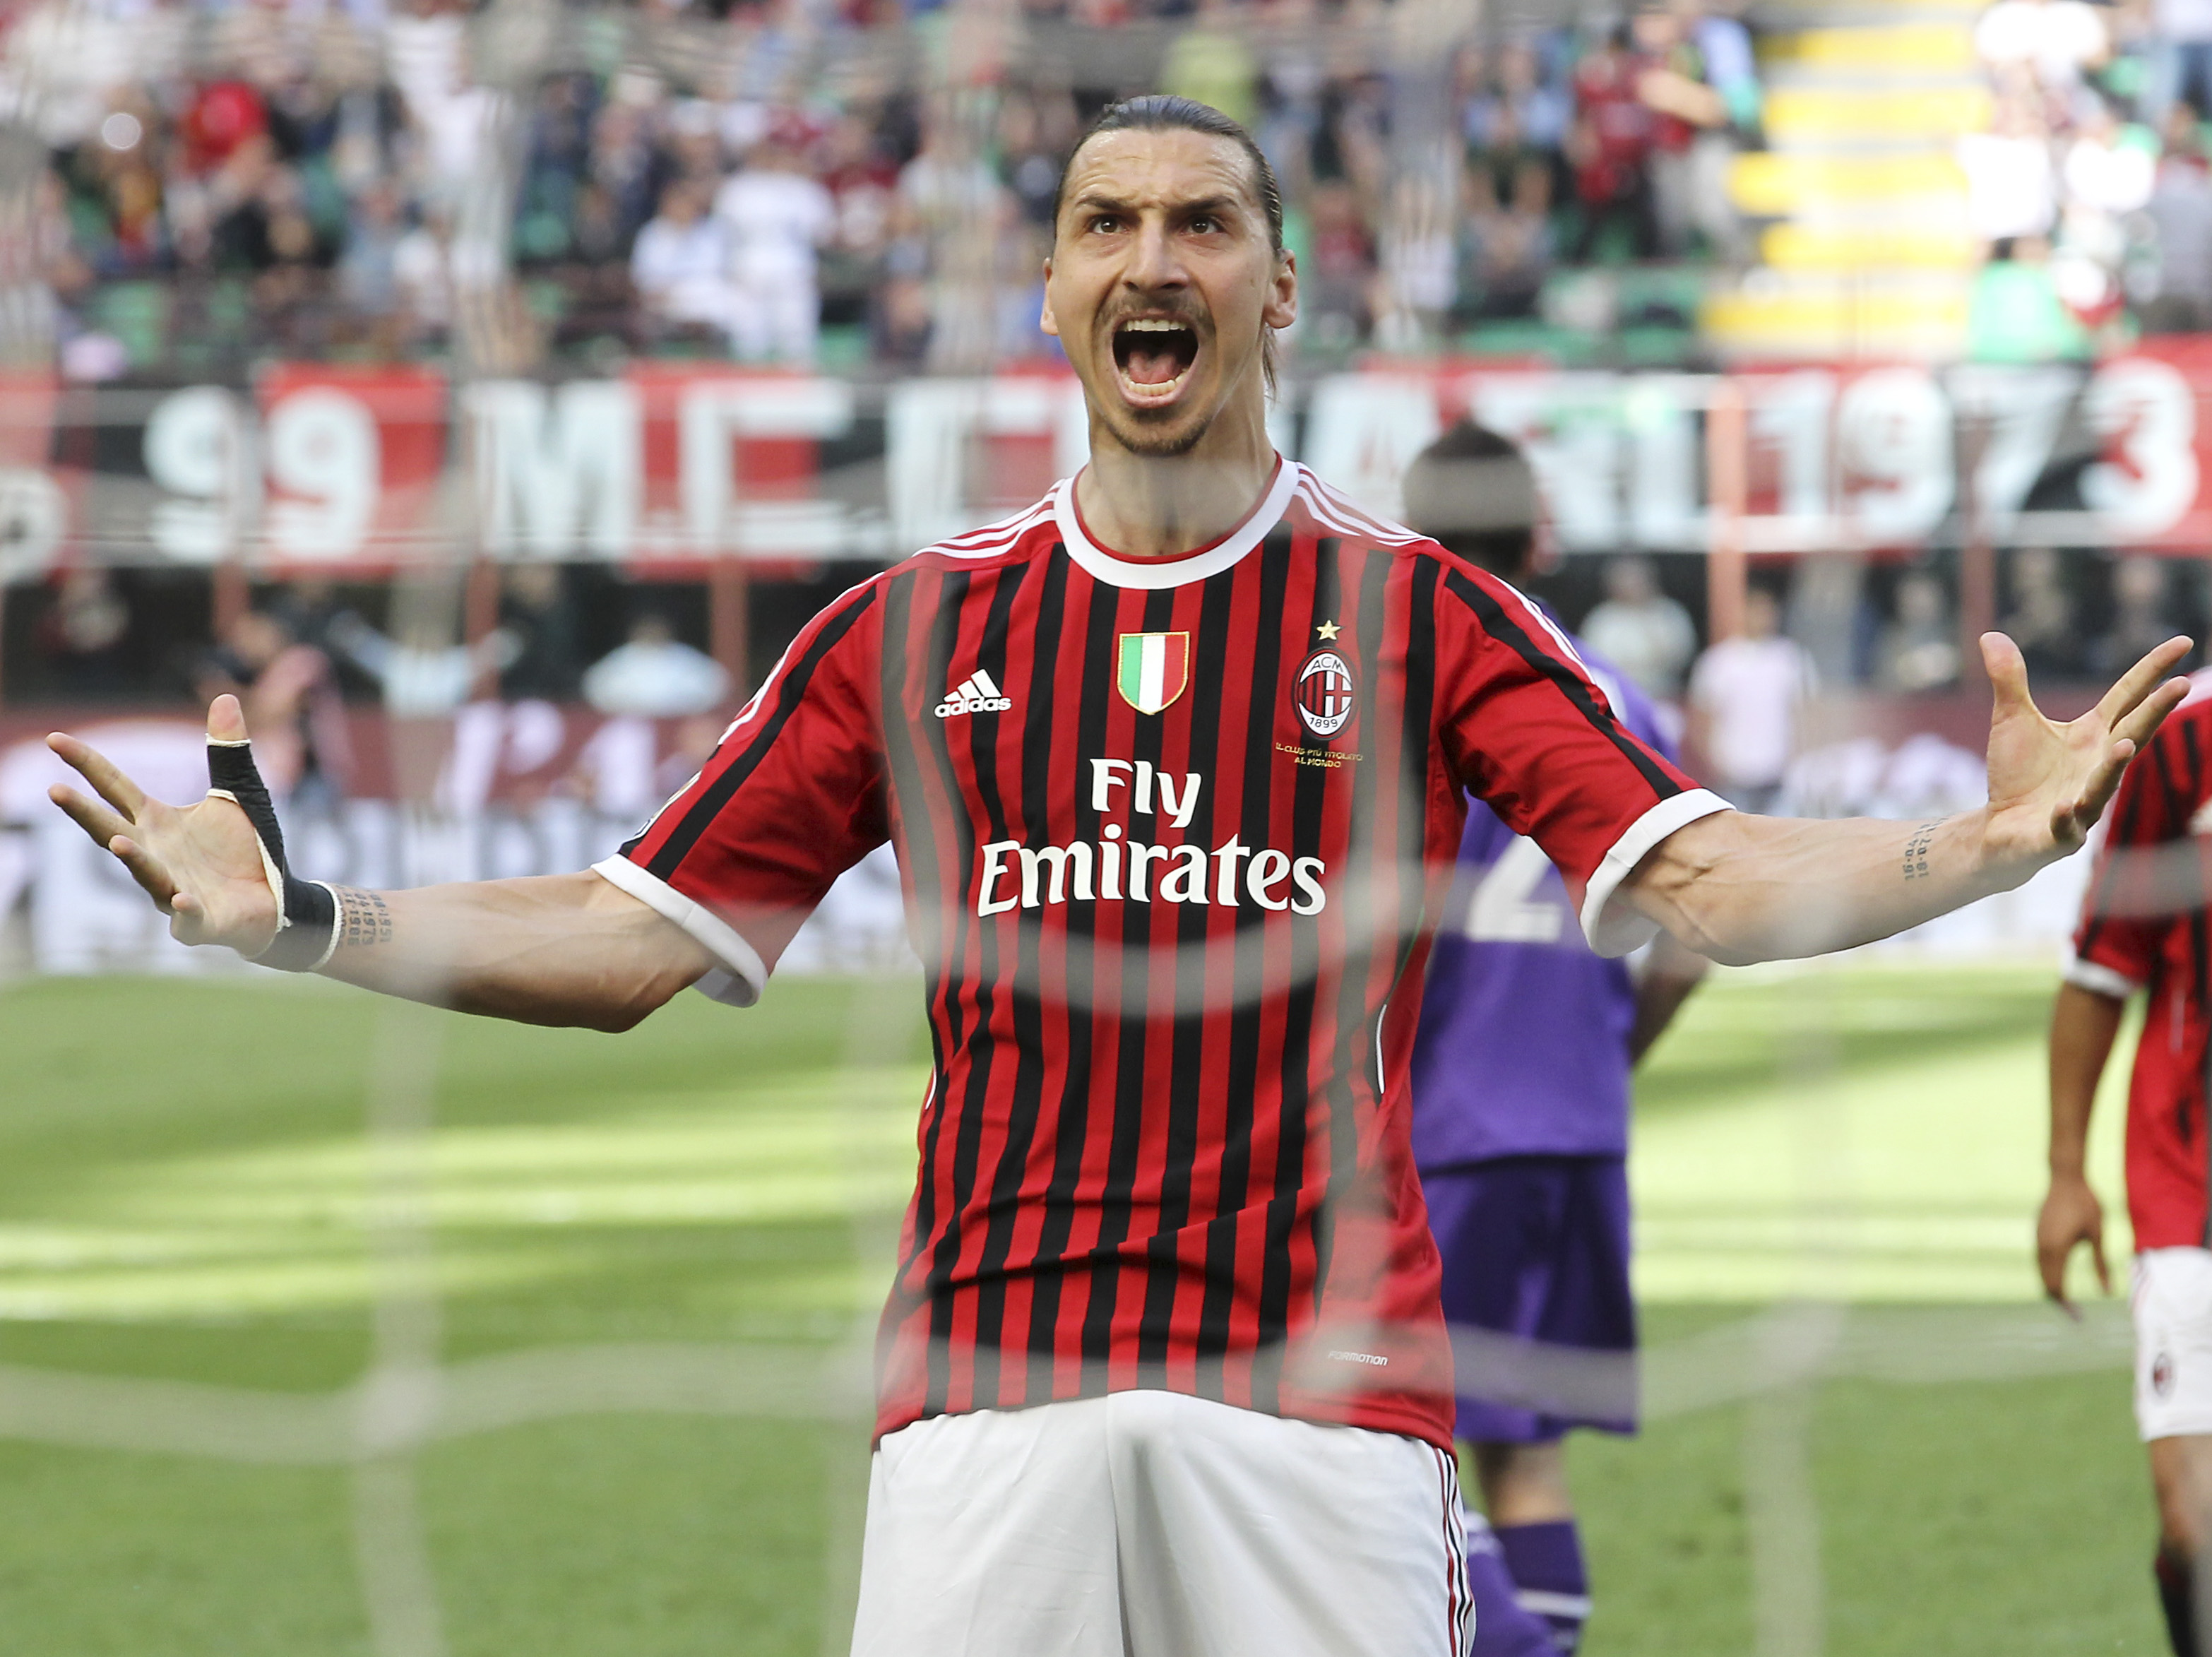 Zlatan-jubel efter straffmålet mot Fiorentina. Får han anledning att fira i kväll?